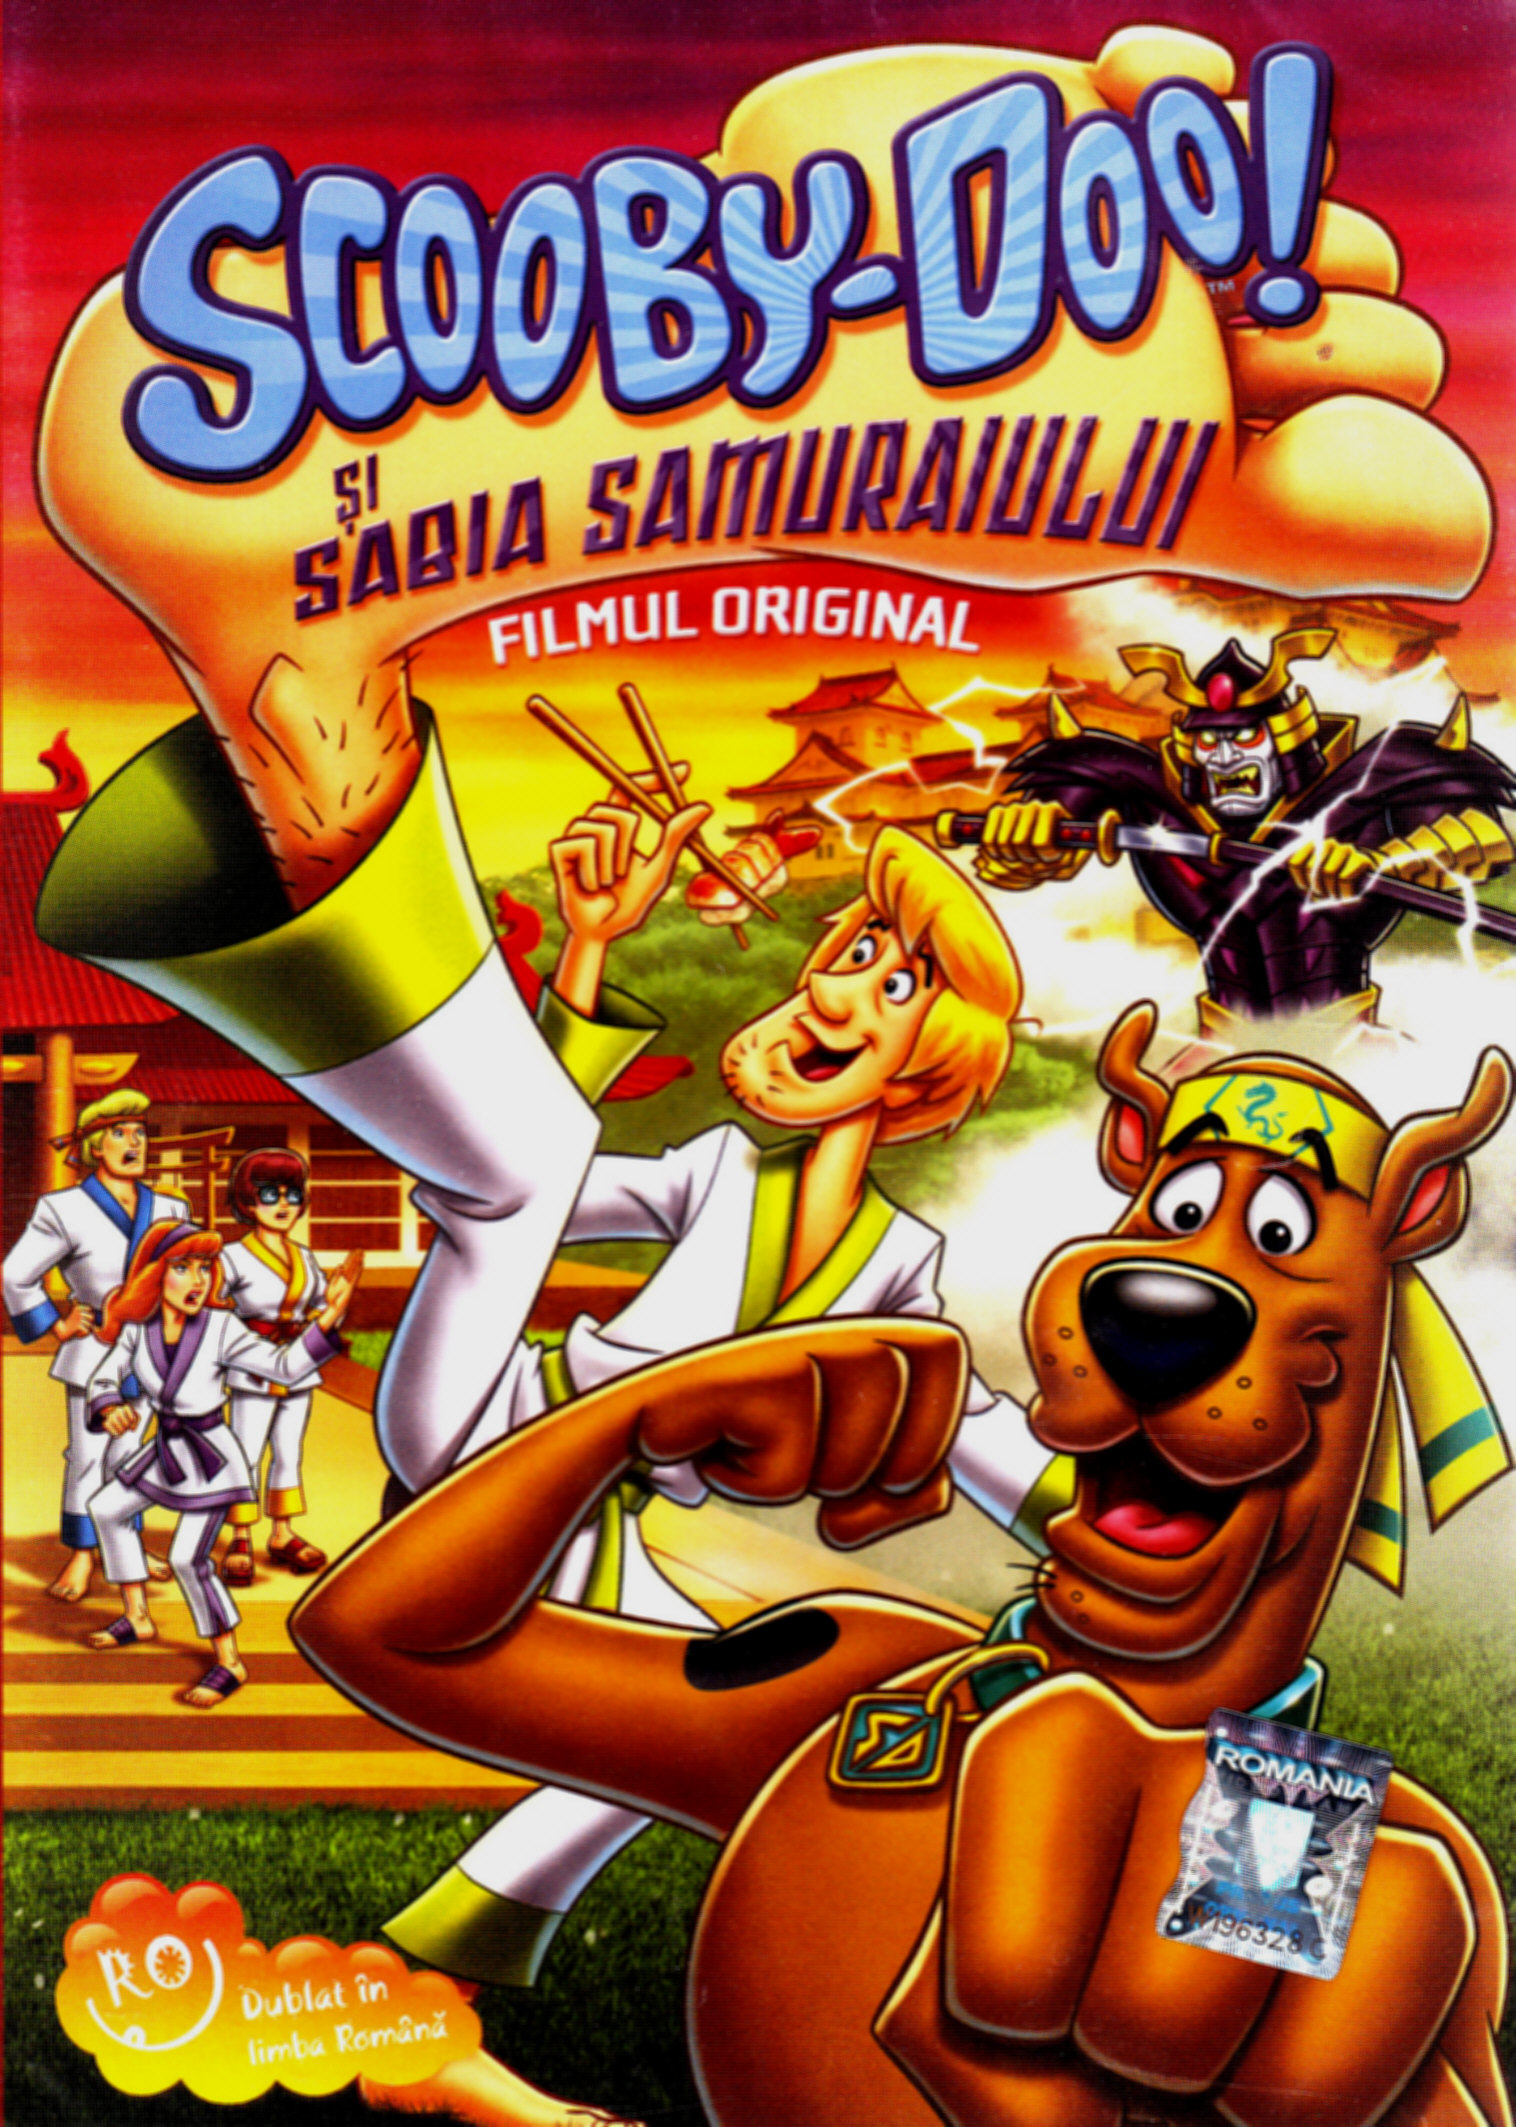 DVD Scooby-Doo Si Sabia Samuraiului